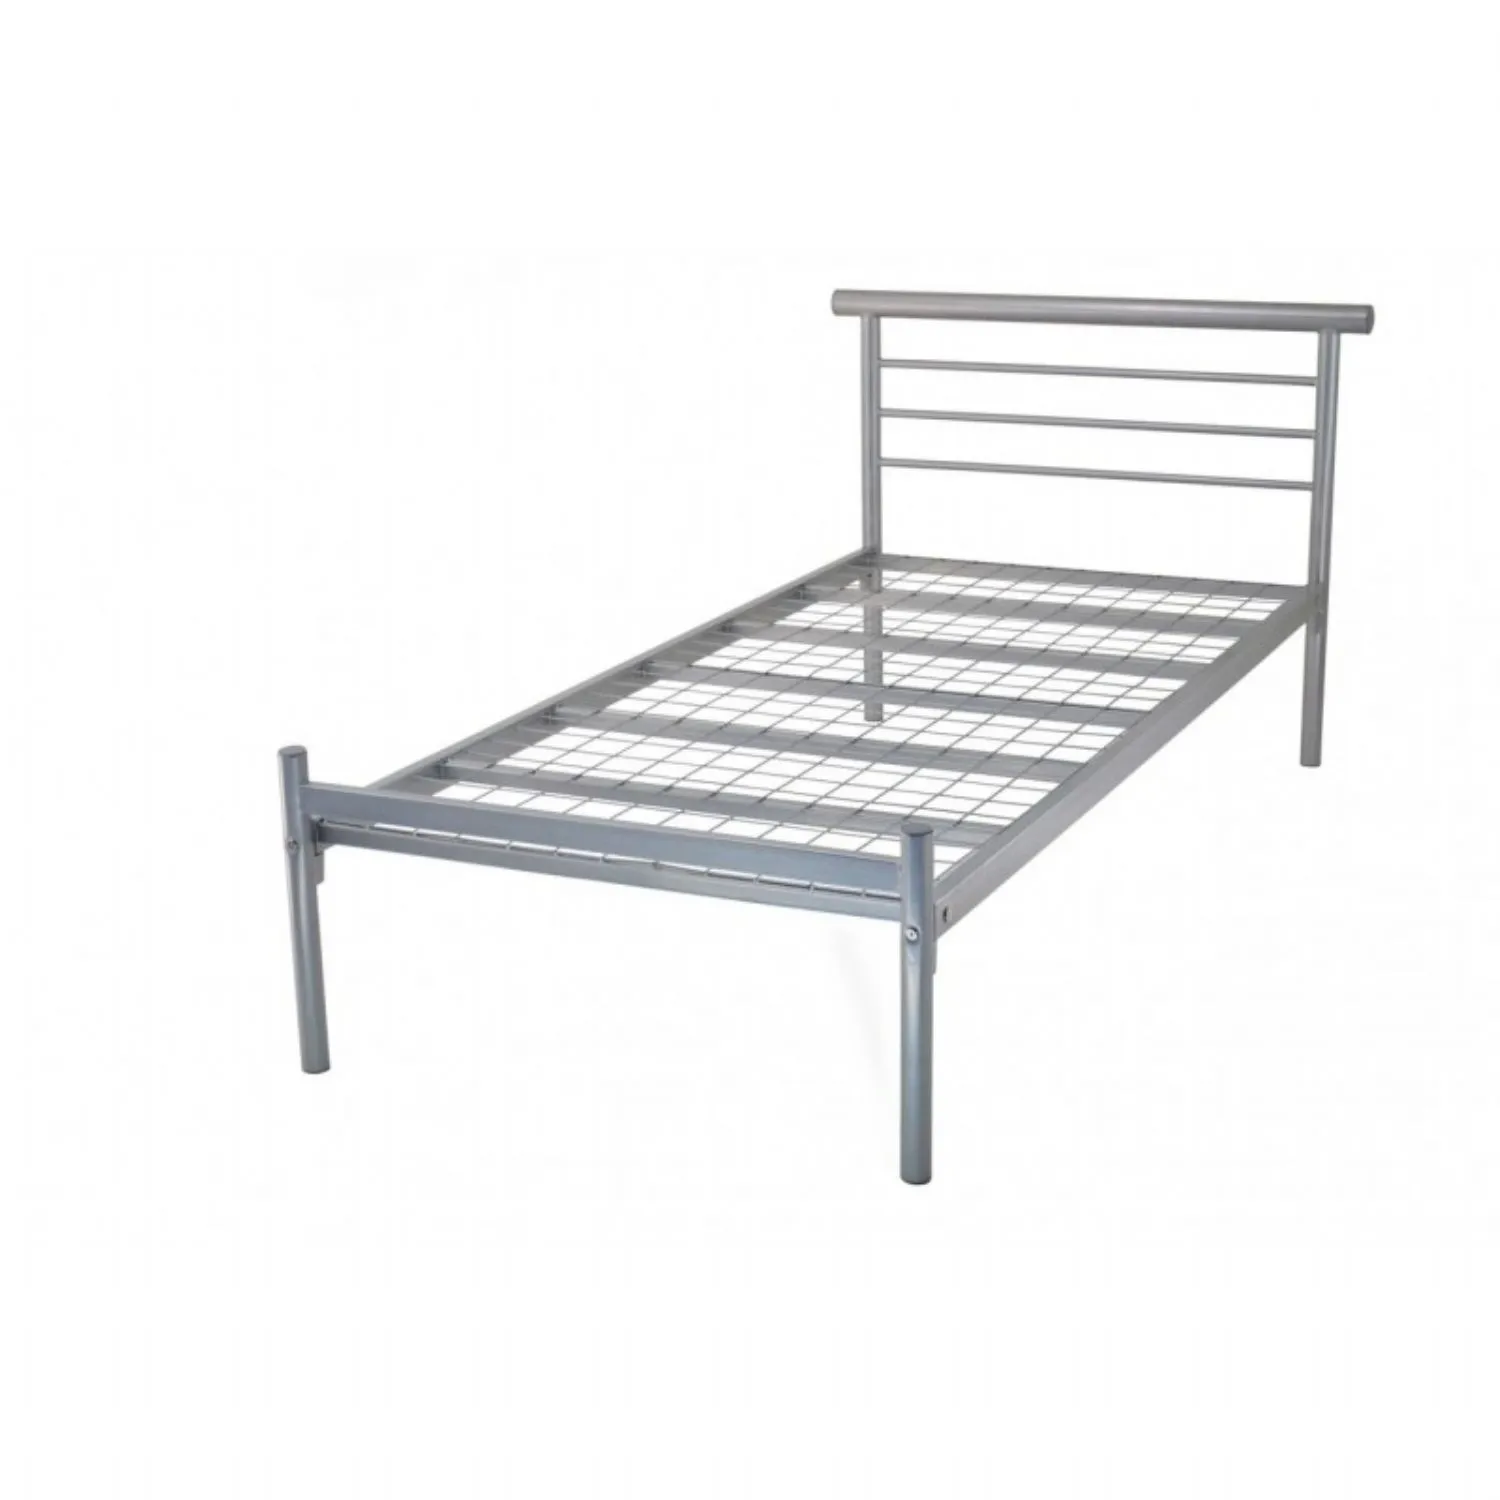 Silver Metal Mesh Based Metal Bed 2ft 6